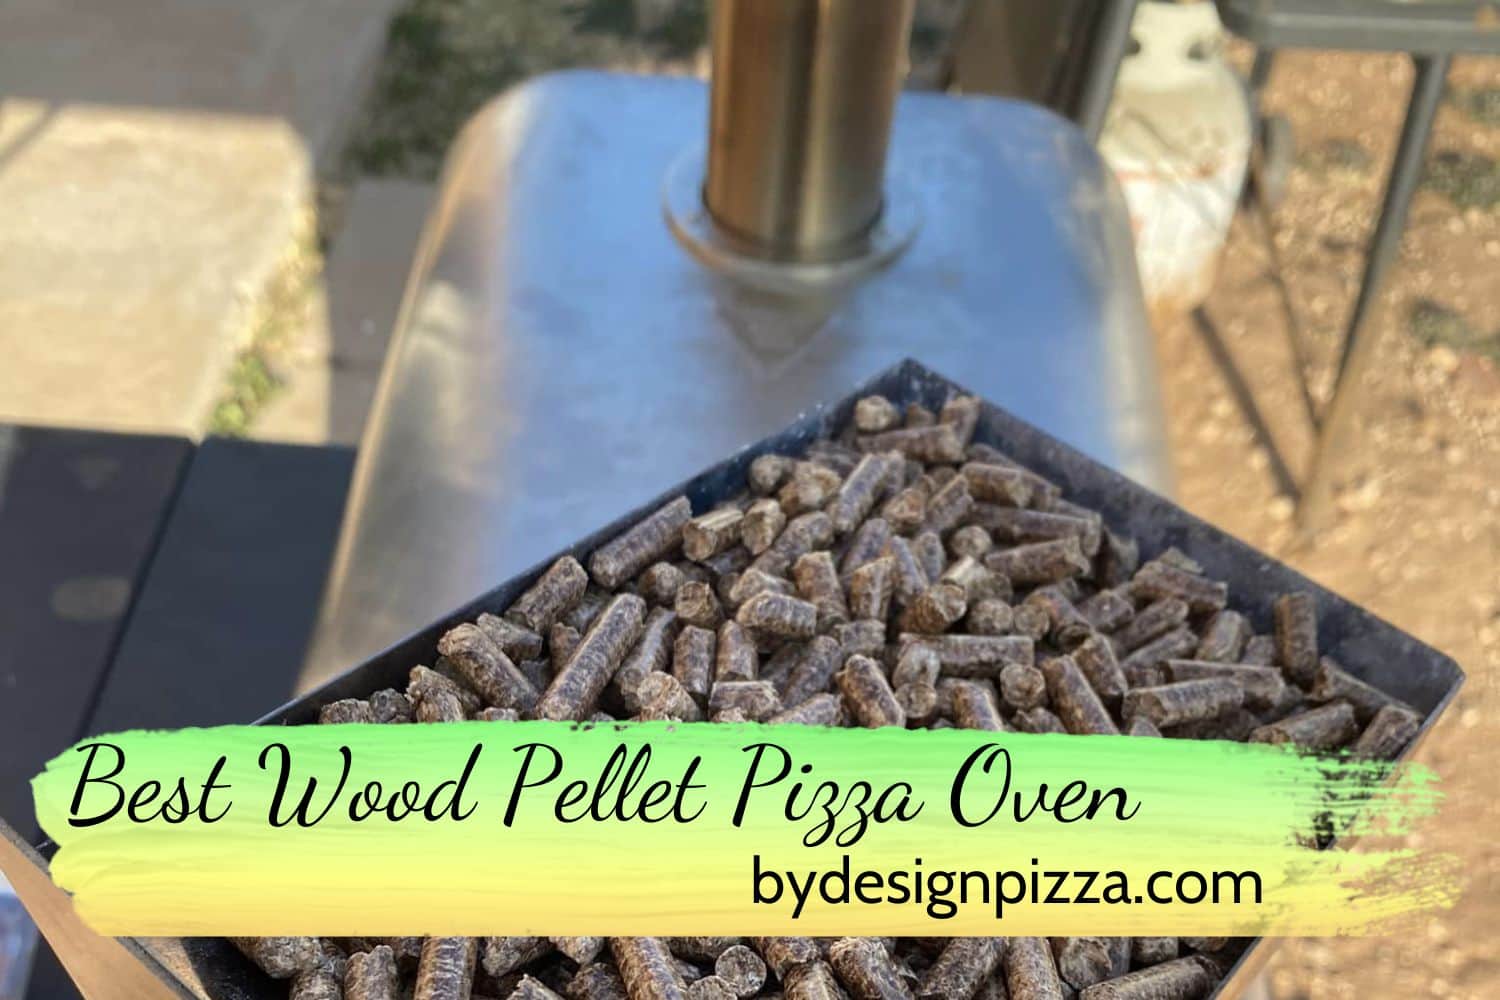 Best Wood Pellet Pizza Oven